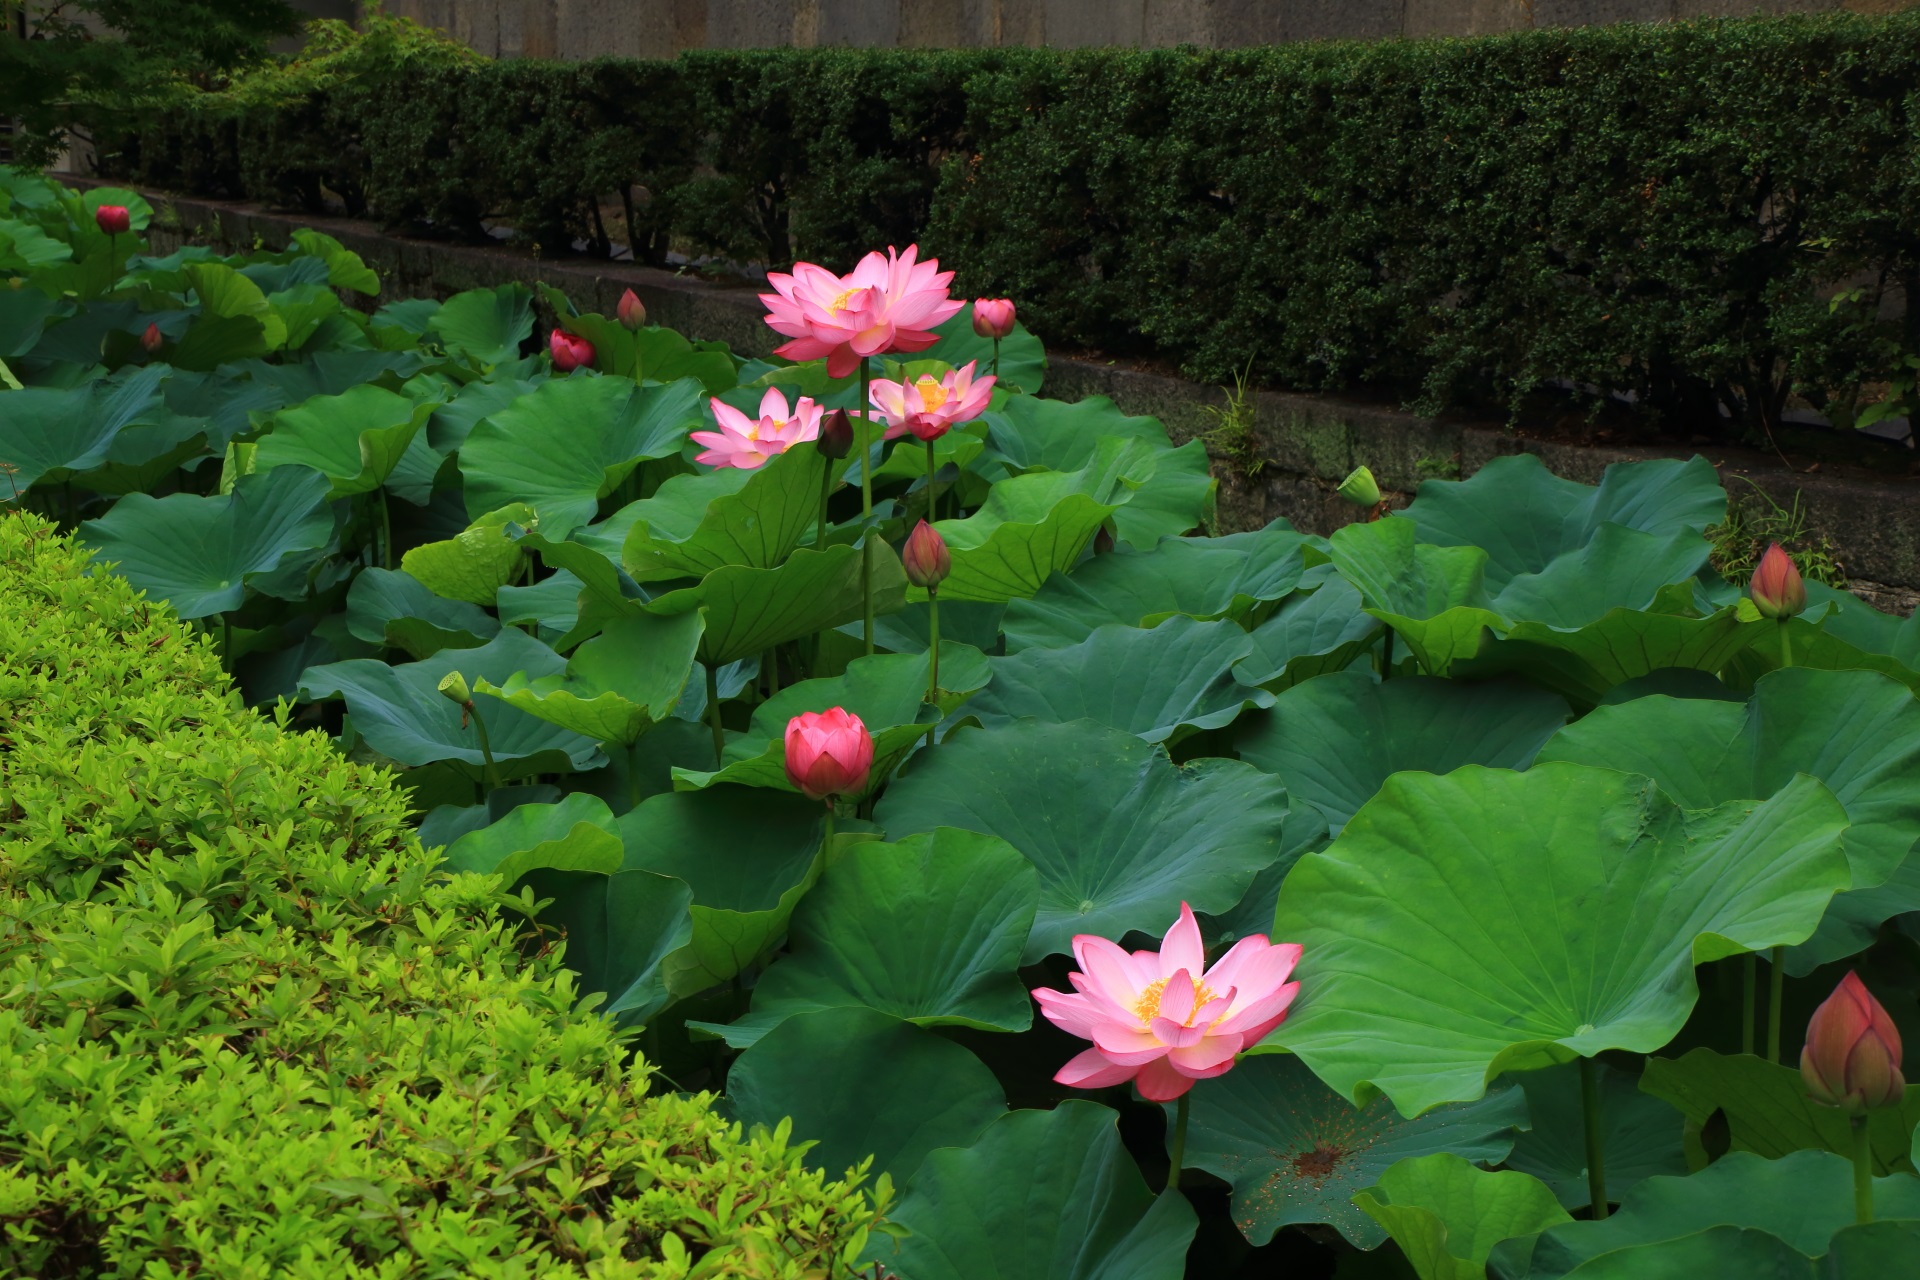 東本願寺の蓮の葉の深い緑に映えるピンクの花